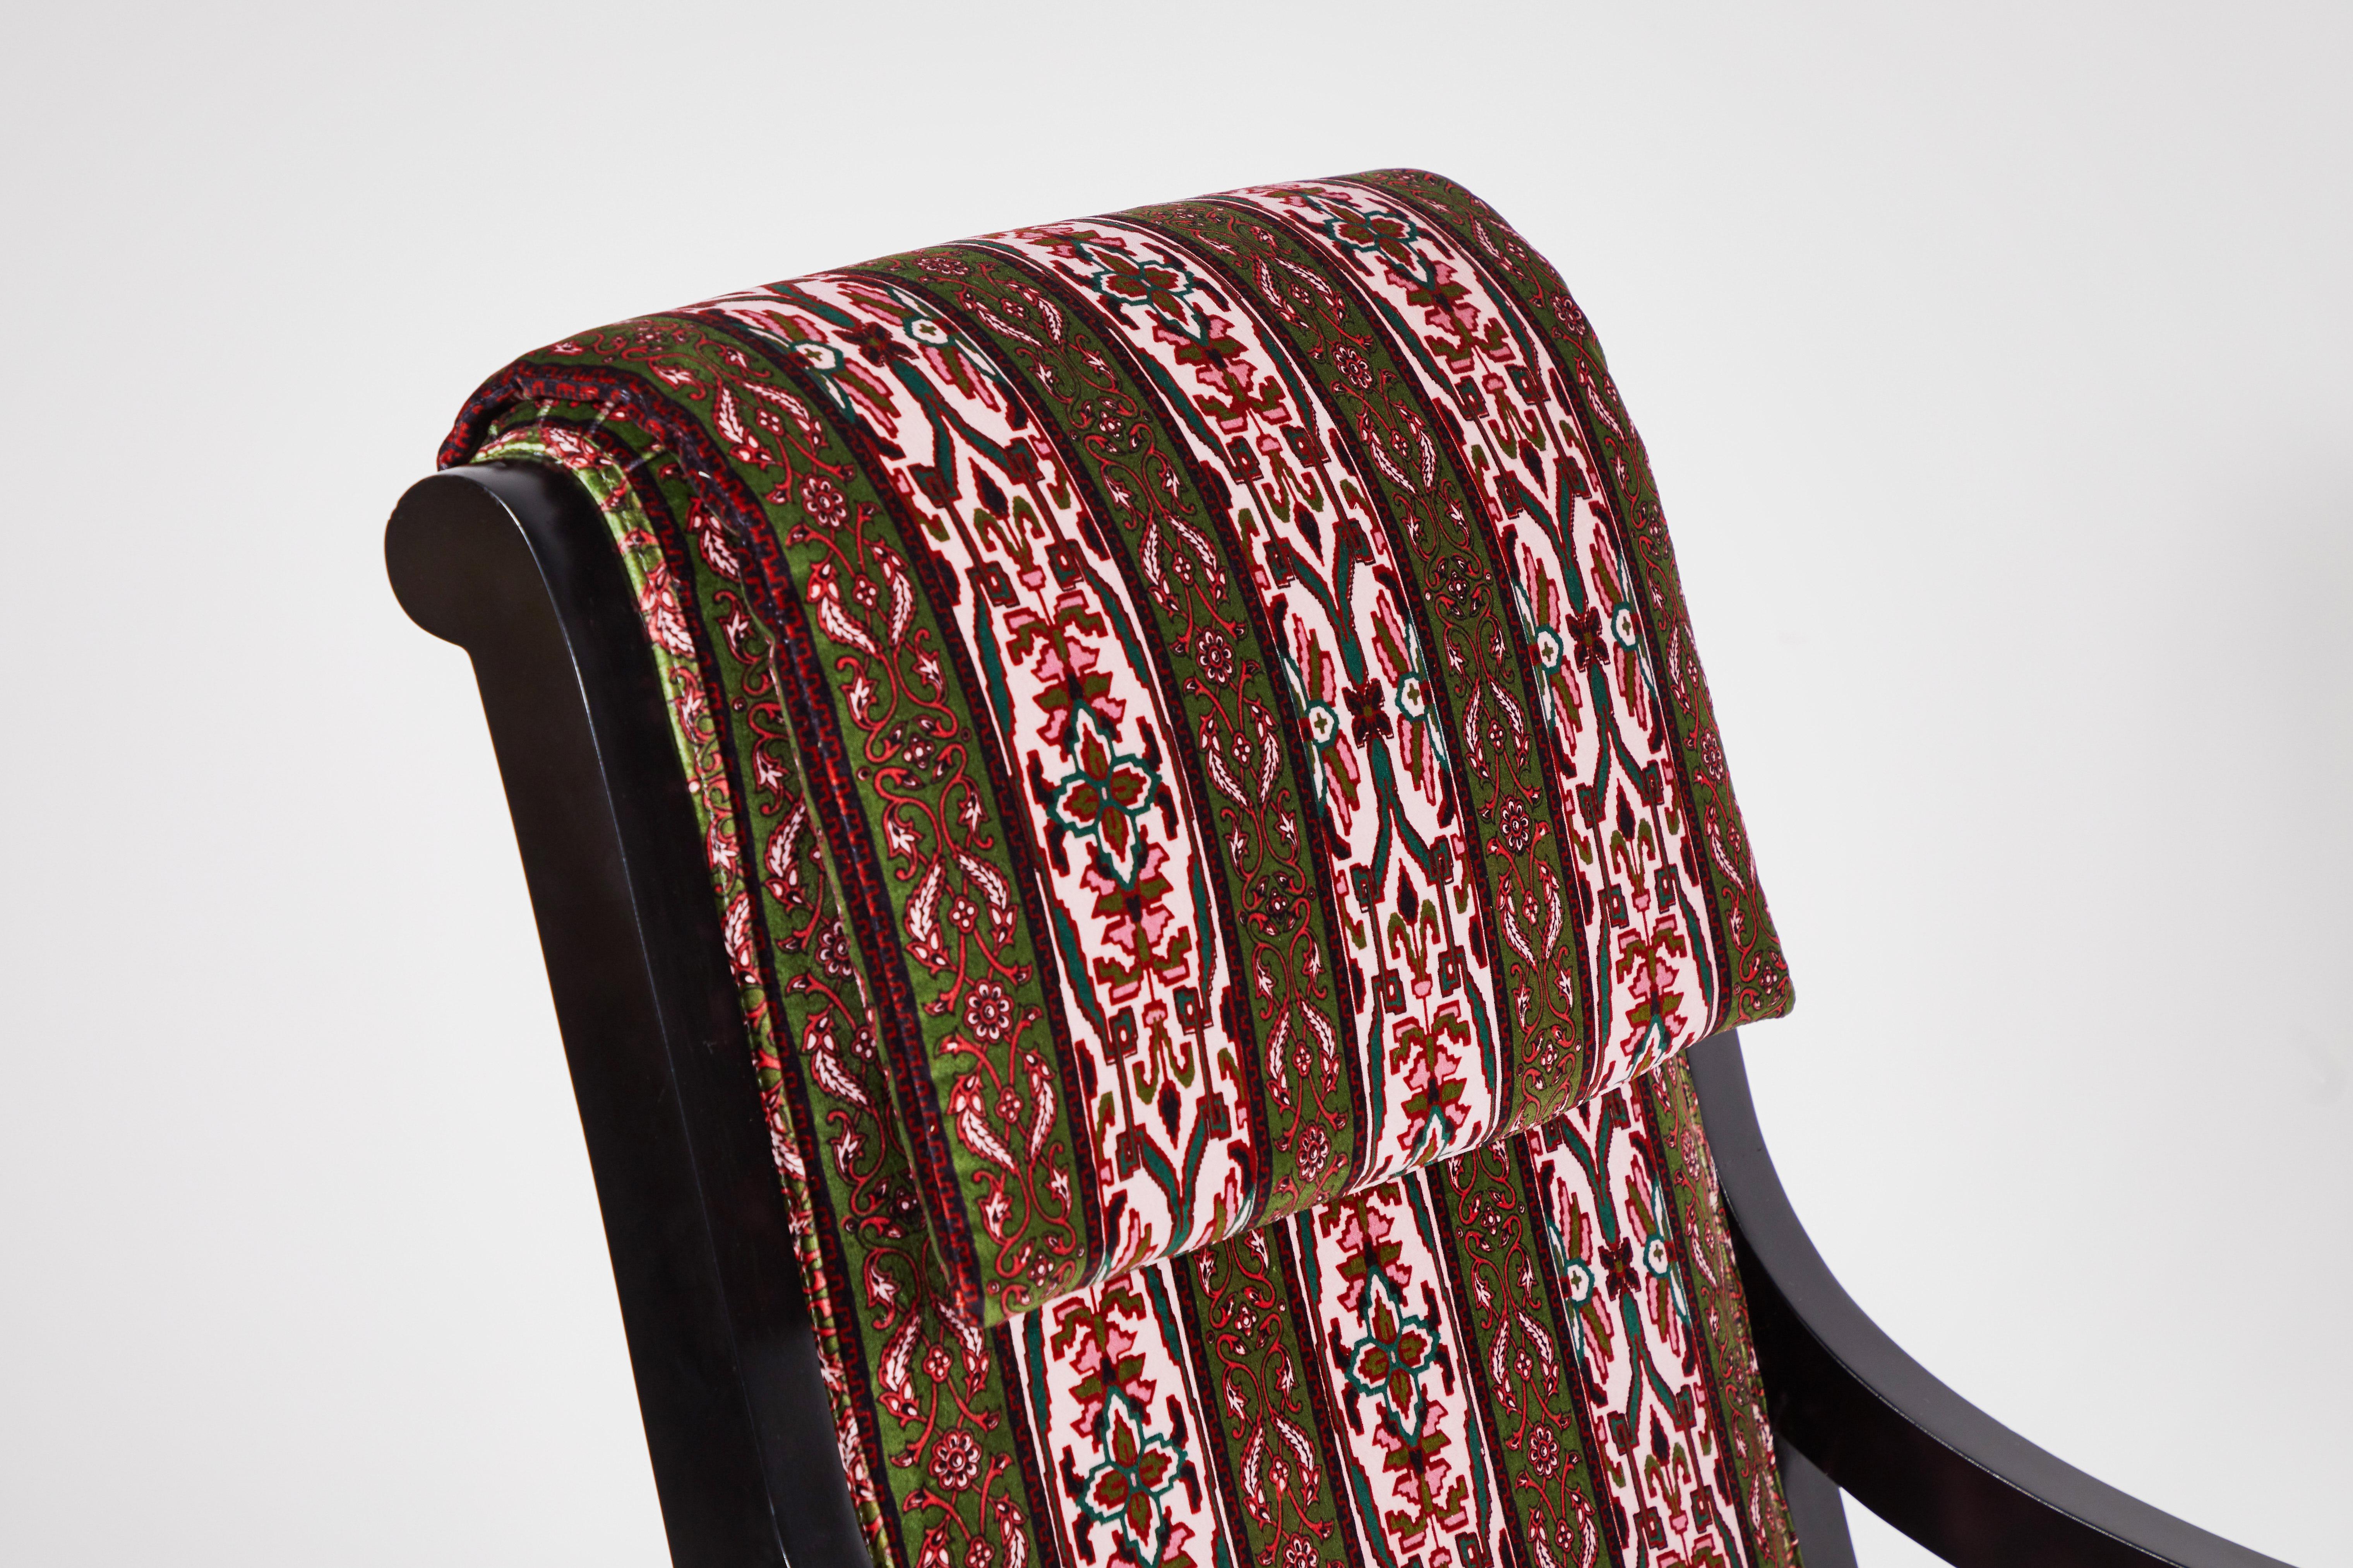 Curved Black Framed Tall Arm Chair Upholstered in House of Hackney Velvet Fabric 3